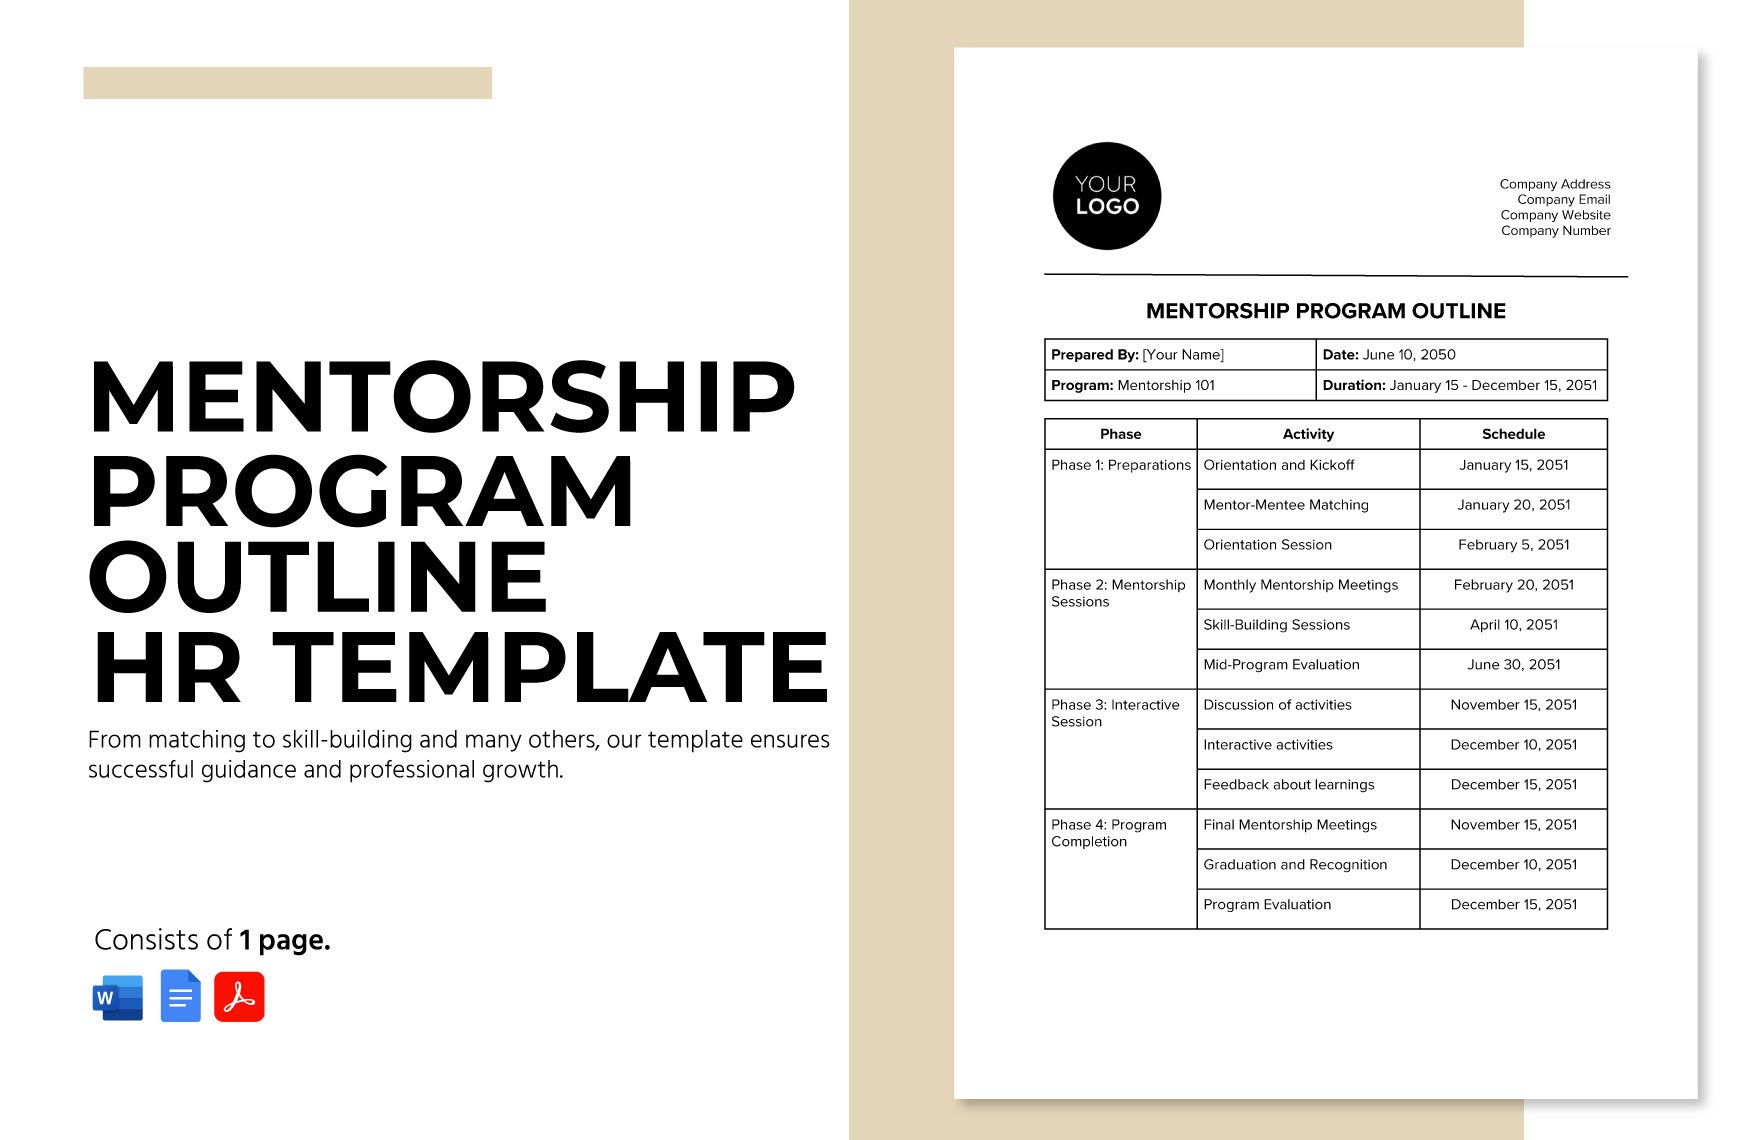 Mentorship Program Outline HR Template in Word, Google Docs, PDF